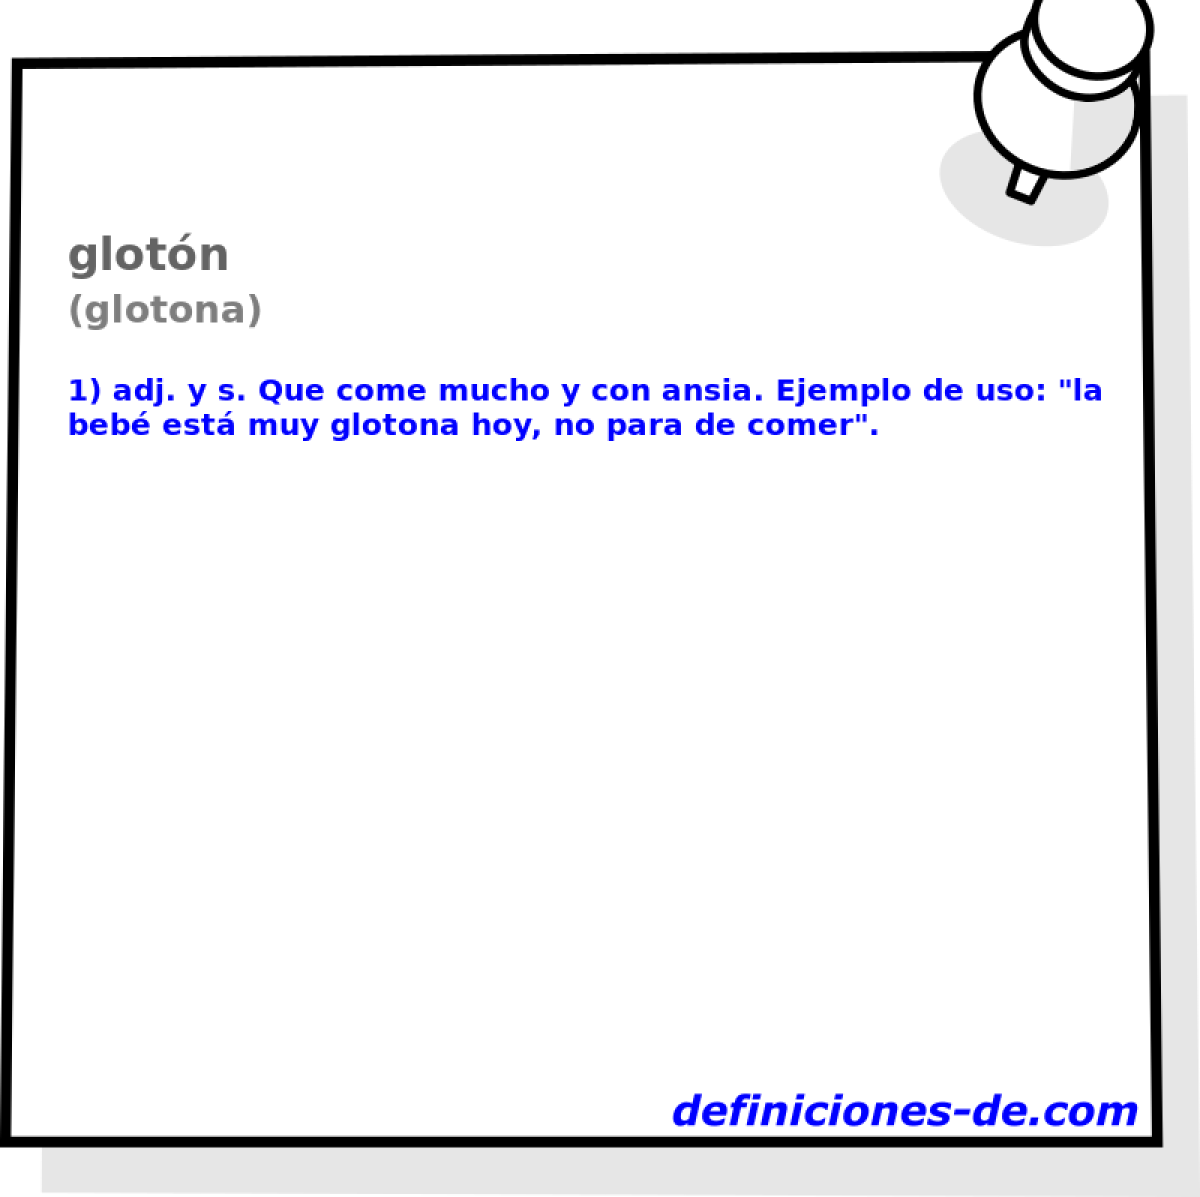 glotn (glotona)